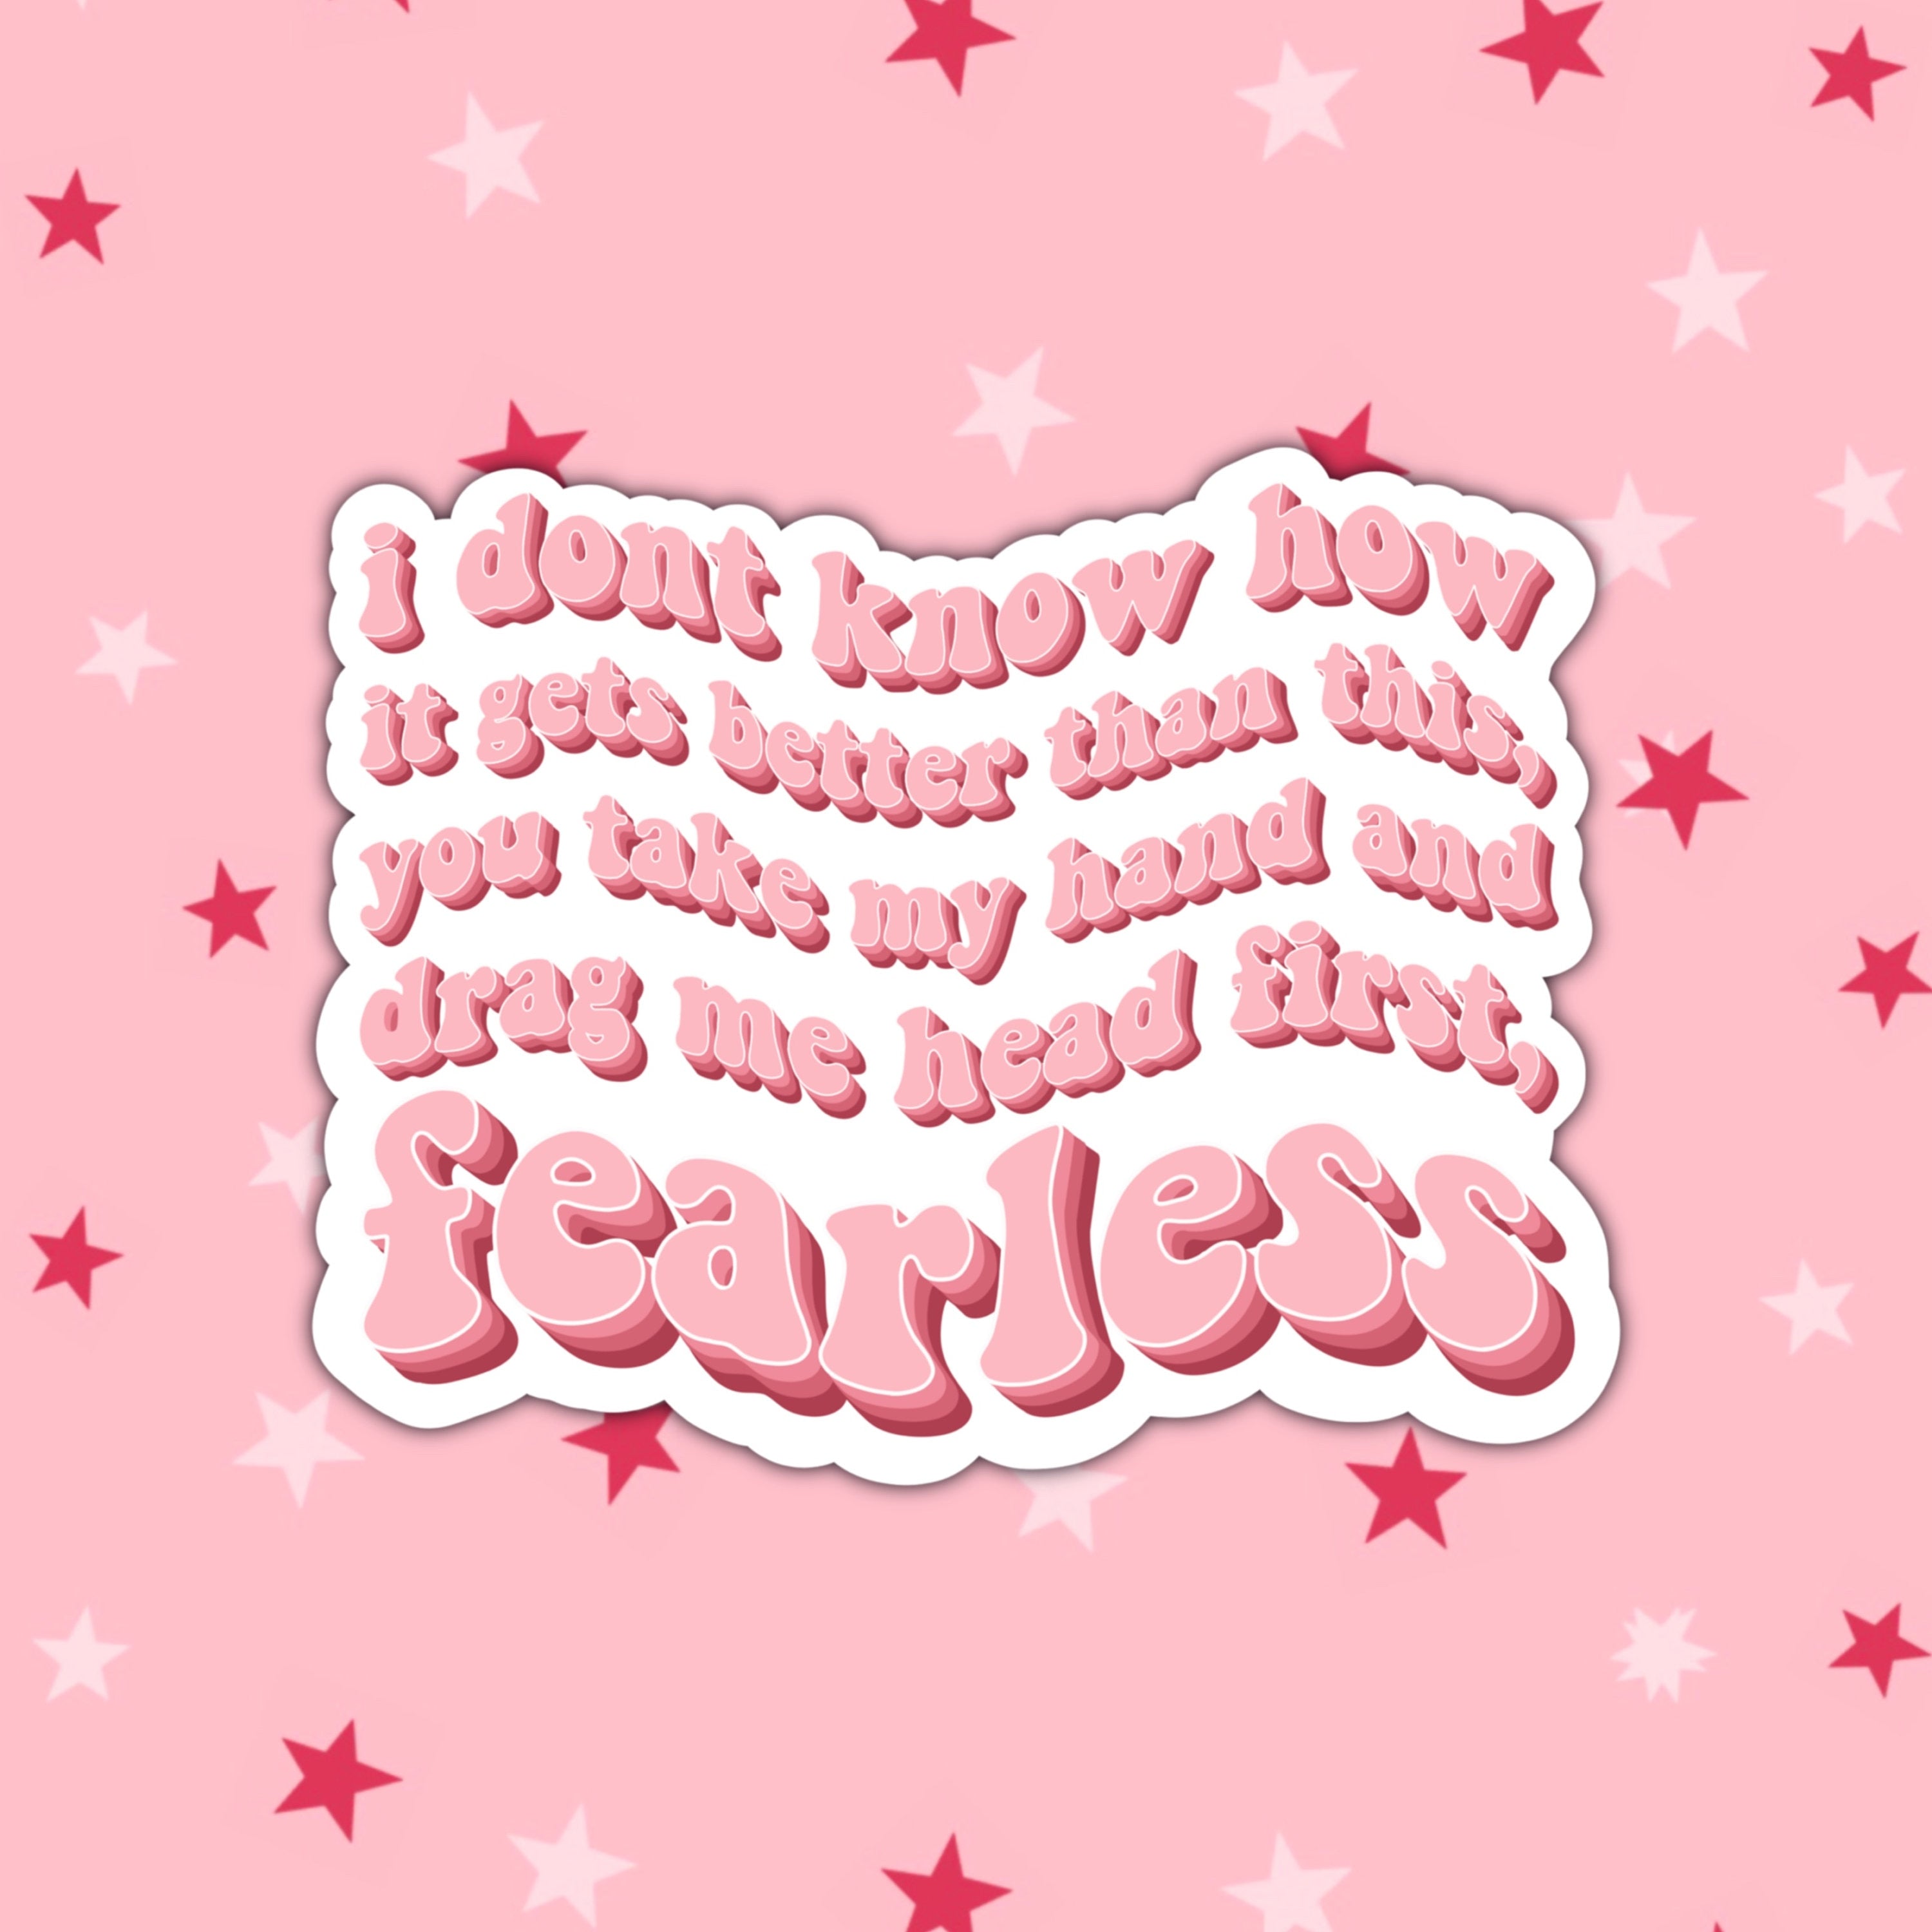 Fearless Lyrics Sticker, Head First, Fearless